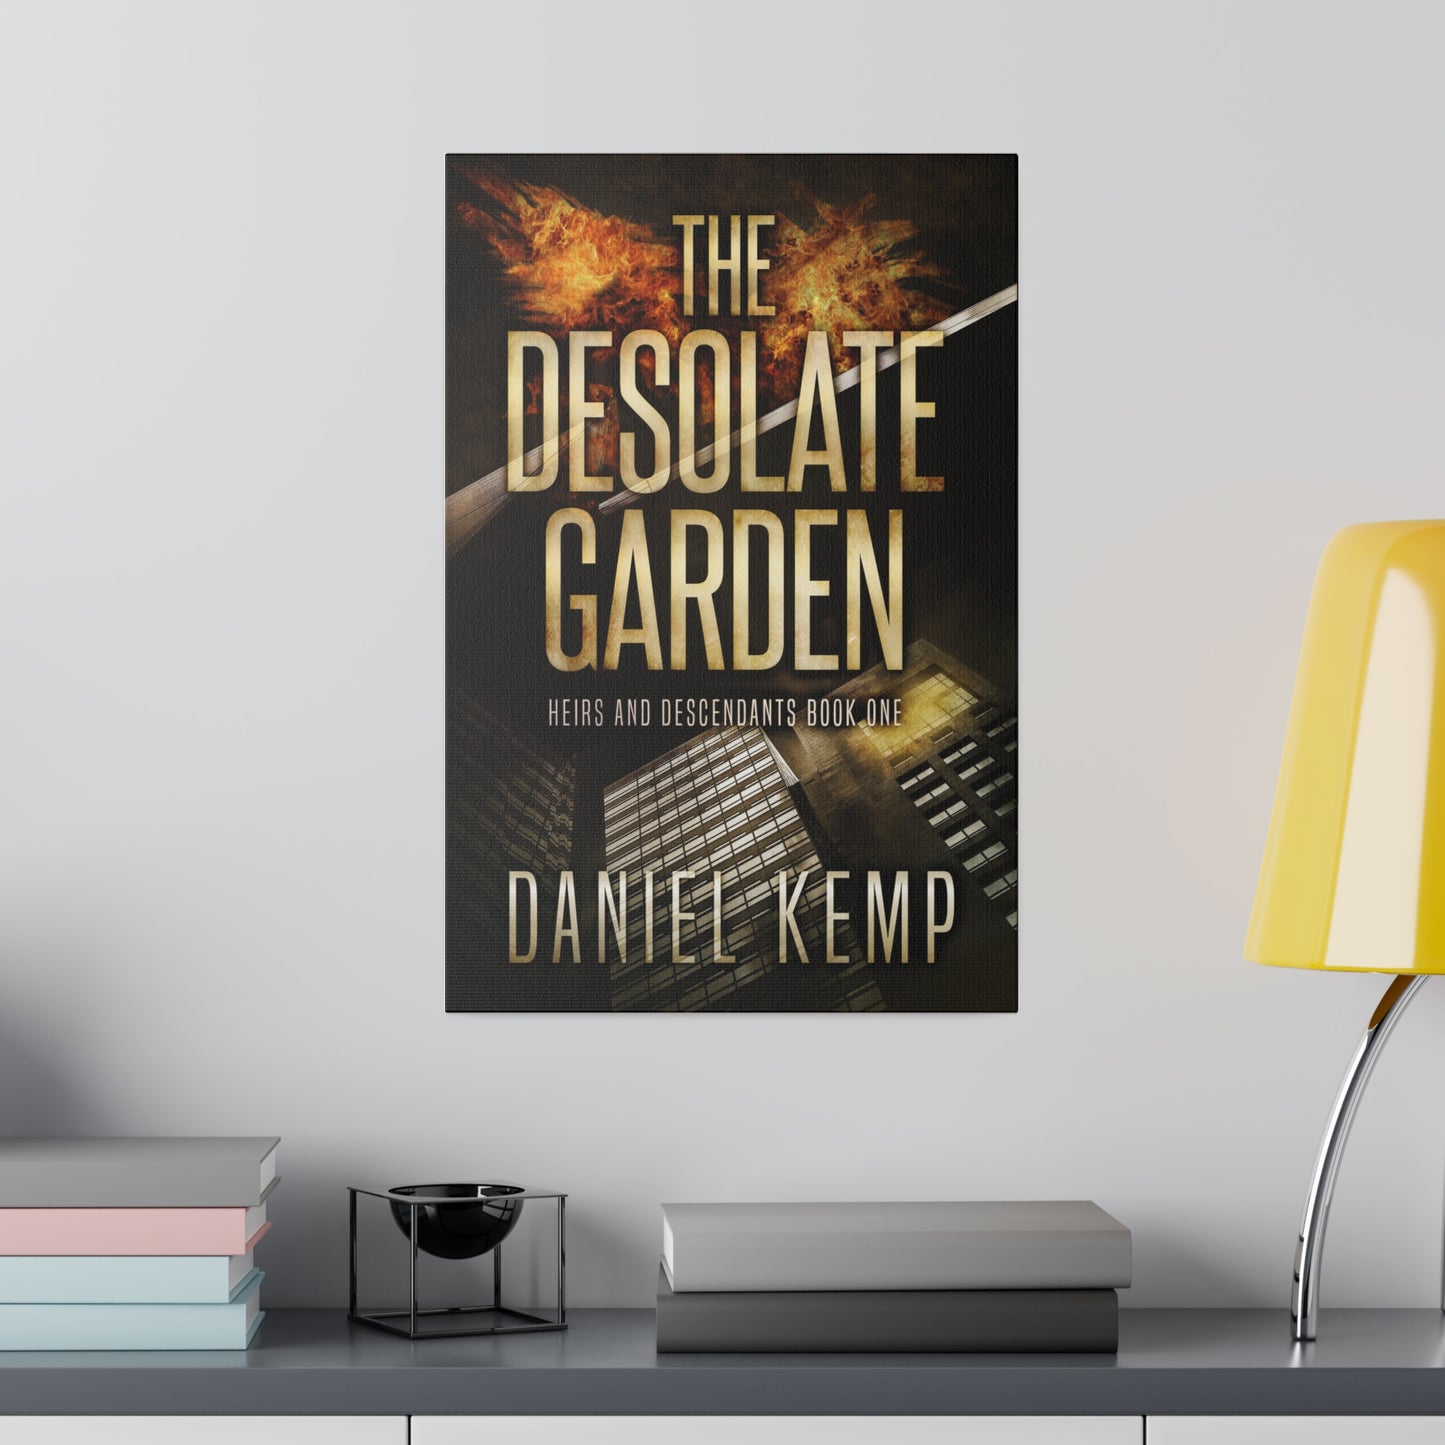 The Desolate Garden - Canvas